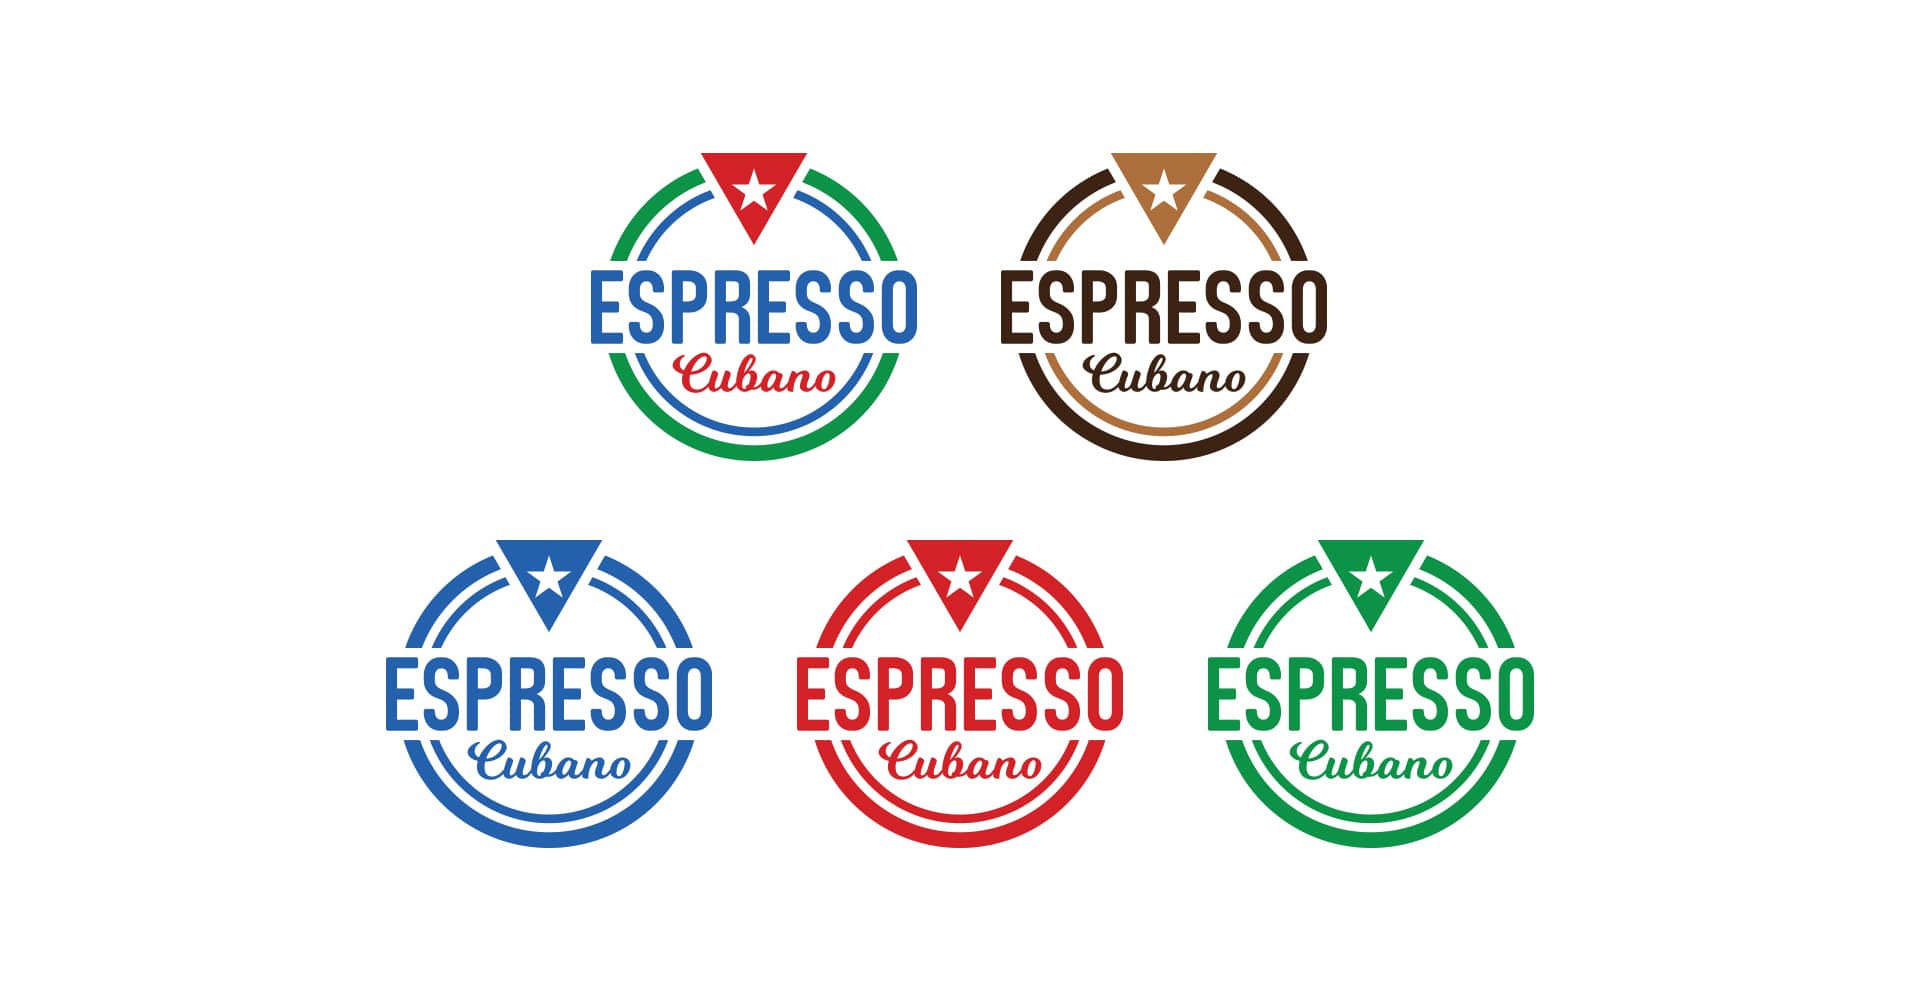 05-espresso-cubano-logos